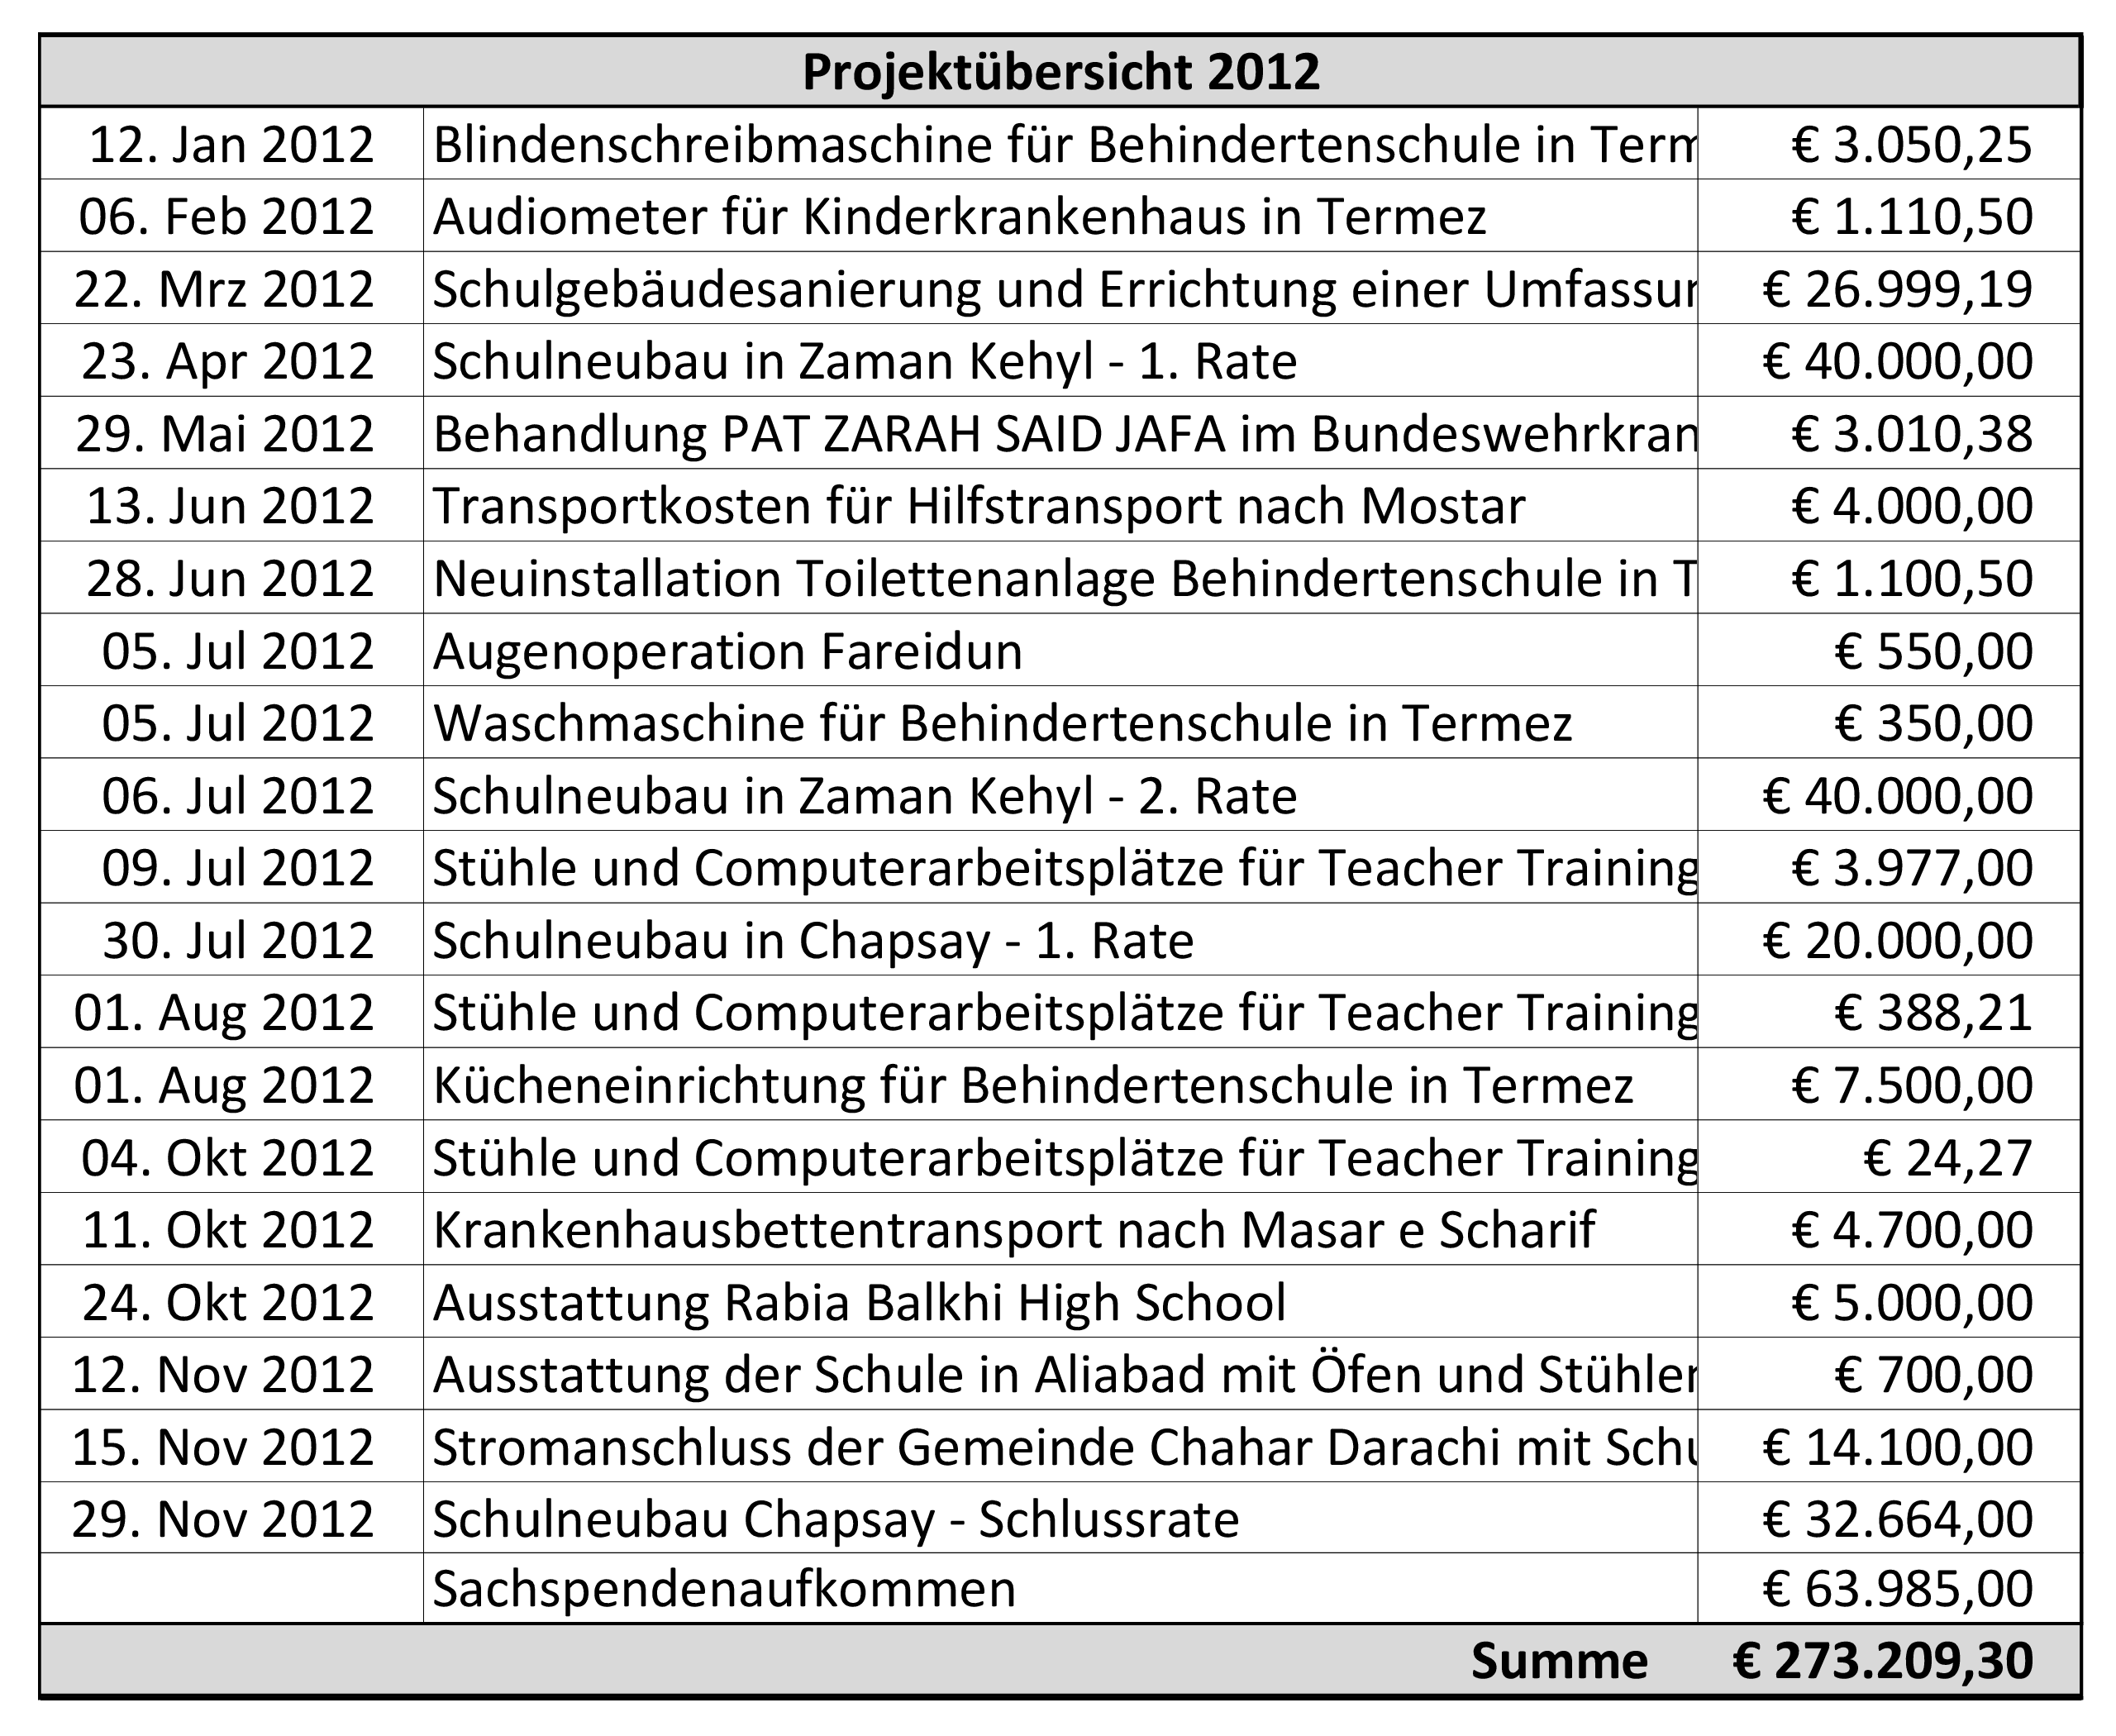 Leistungsbilanz 2012